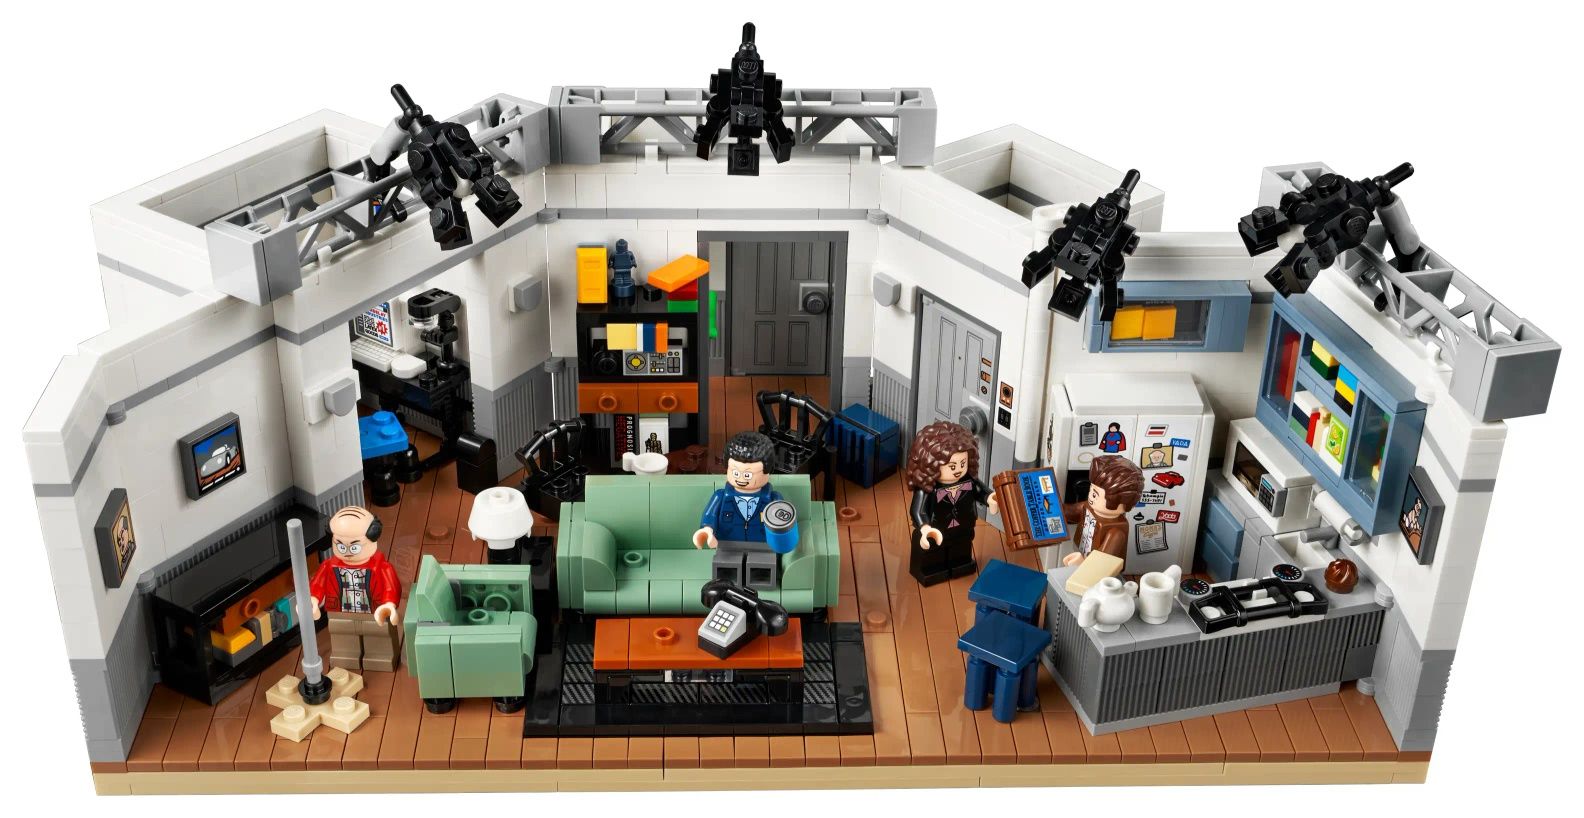 Klocki Lego 21328 Seinfeld nowe szybka wysyłka od ręki